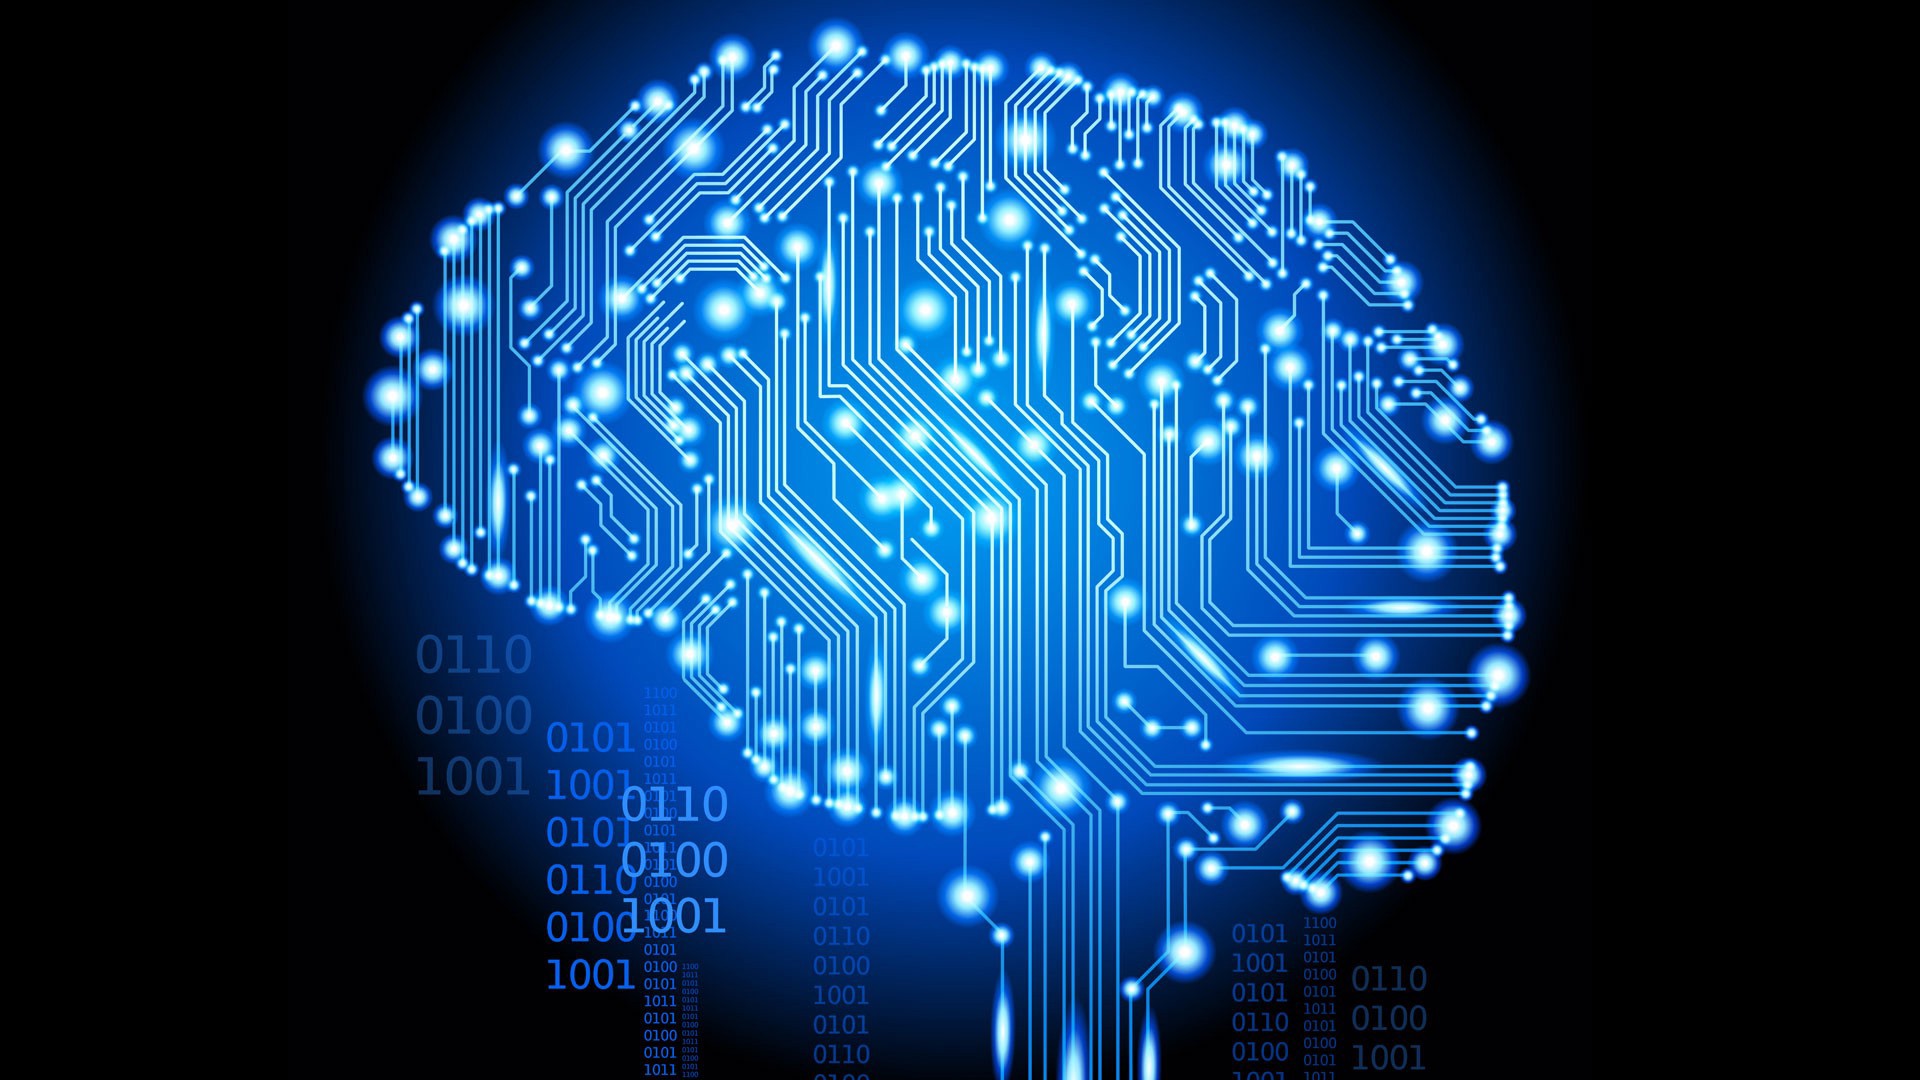 Les réseaux de neurones permettent l’entrée en scène de l’apprentissage automatique, le «machine learning». C’est essentiellement de cela qu’on parle lorsqu’on évoque aujourd’hui l’intelligence artificielle.